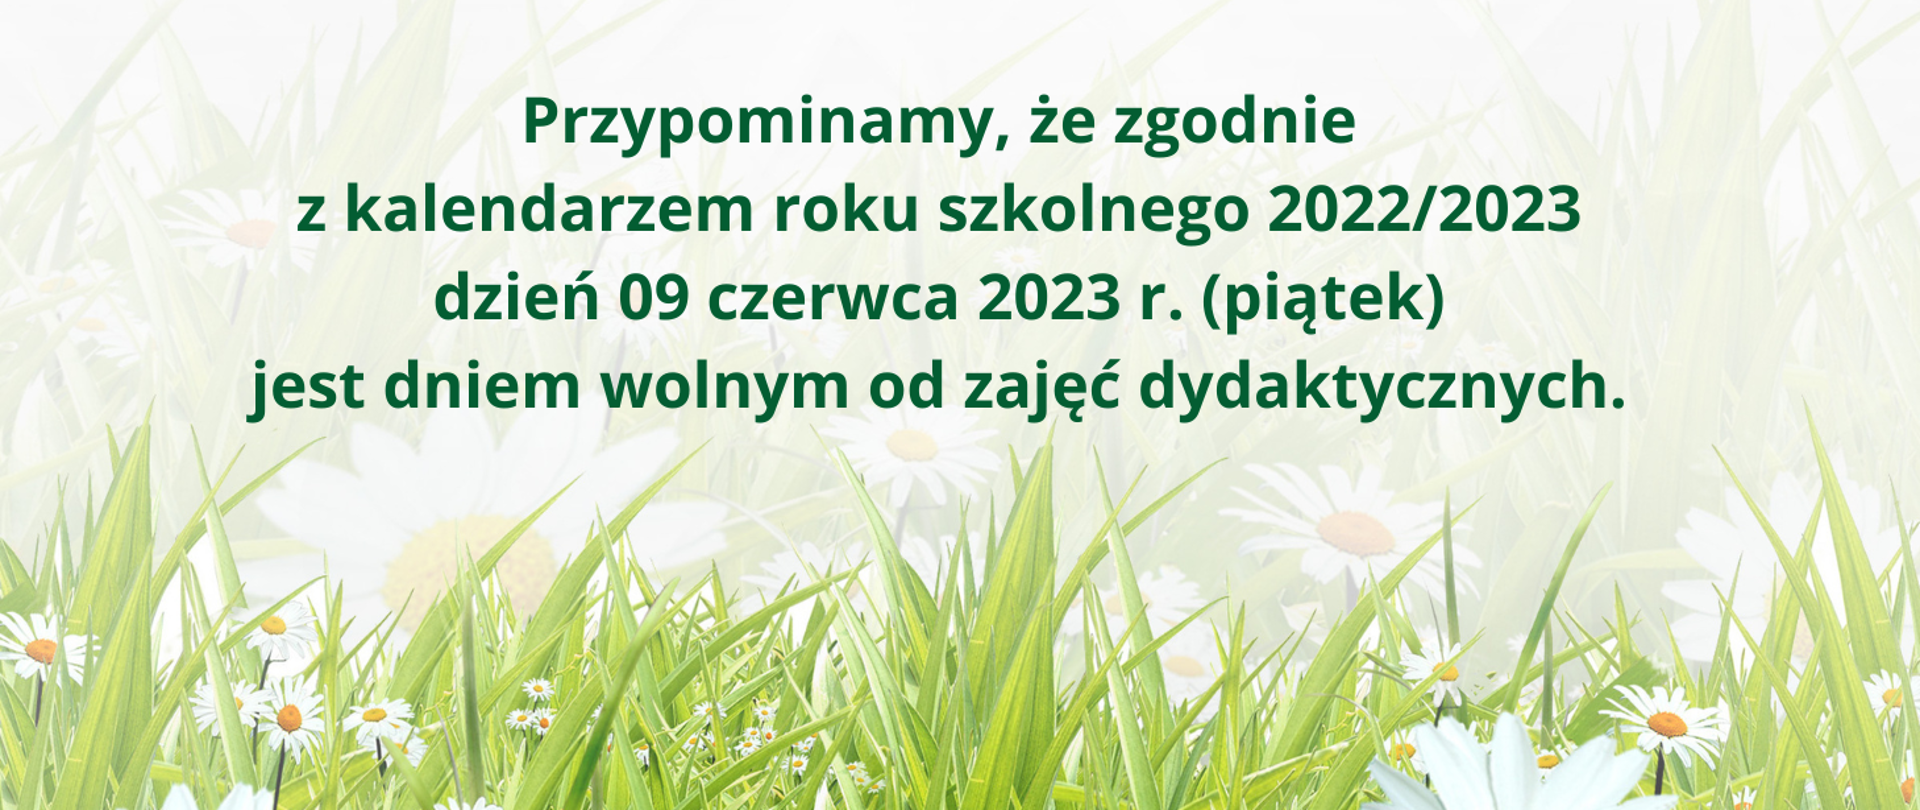 Tło obrazka [przypomina łąkę pełną stokrotek. U góry obrazka zielony napis: "Przypominamy, że zgodnie z kalendarzem roku szkolnego 2022/2023 dzień 09 czerwca 2023 r. (piątek) jest dniem wolnym od zajęć dydaktycznych".